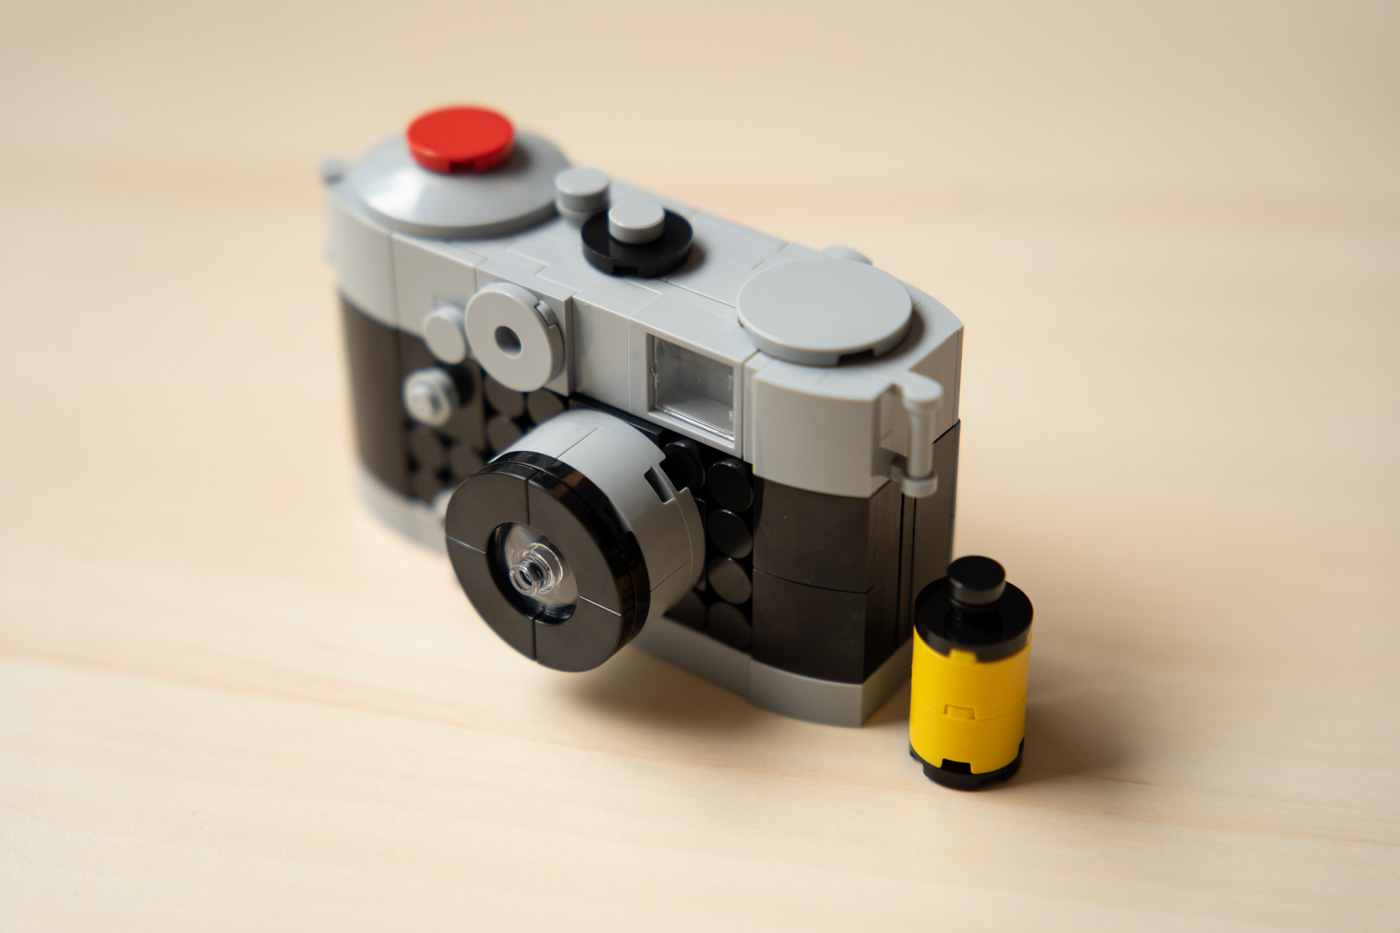 Test de l'appareil photo Lego : un boîtier étonnant